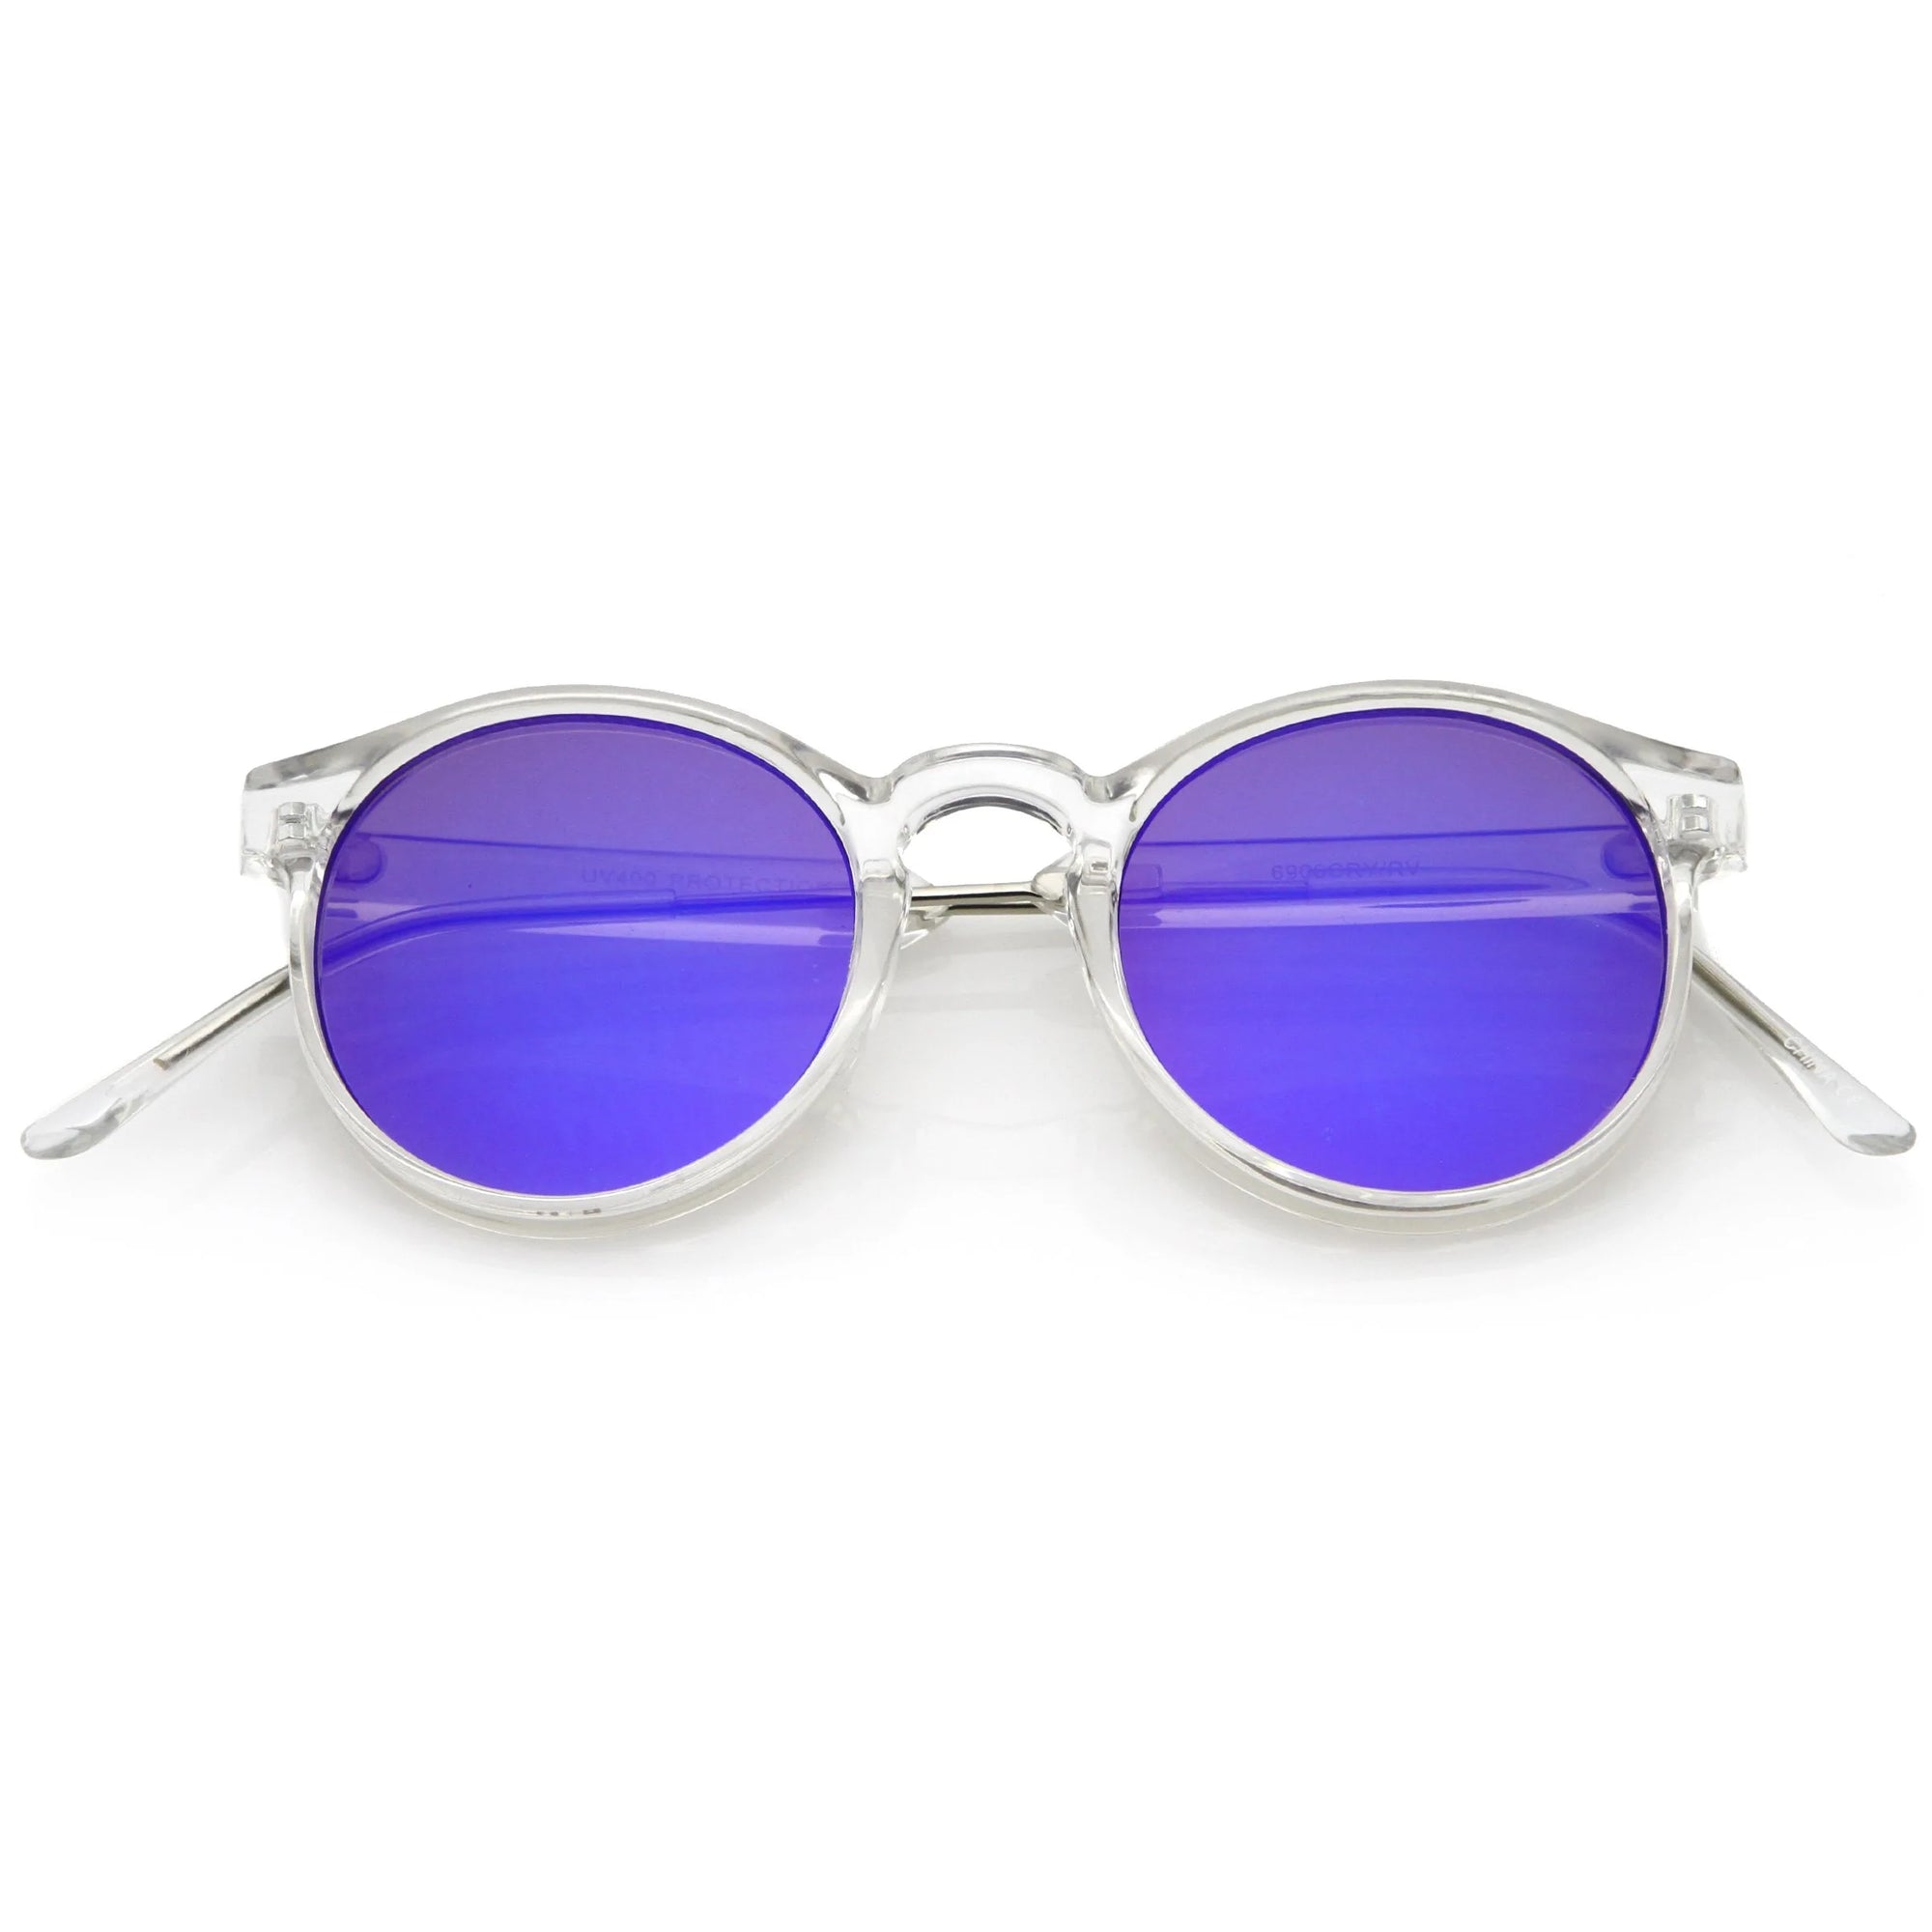 Gafas de sol con lentes de espejo P3 redondas y transparentes A464